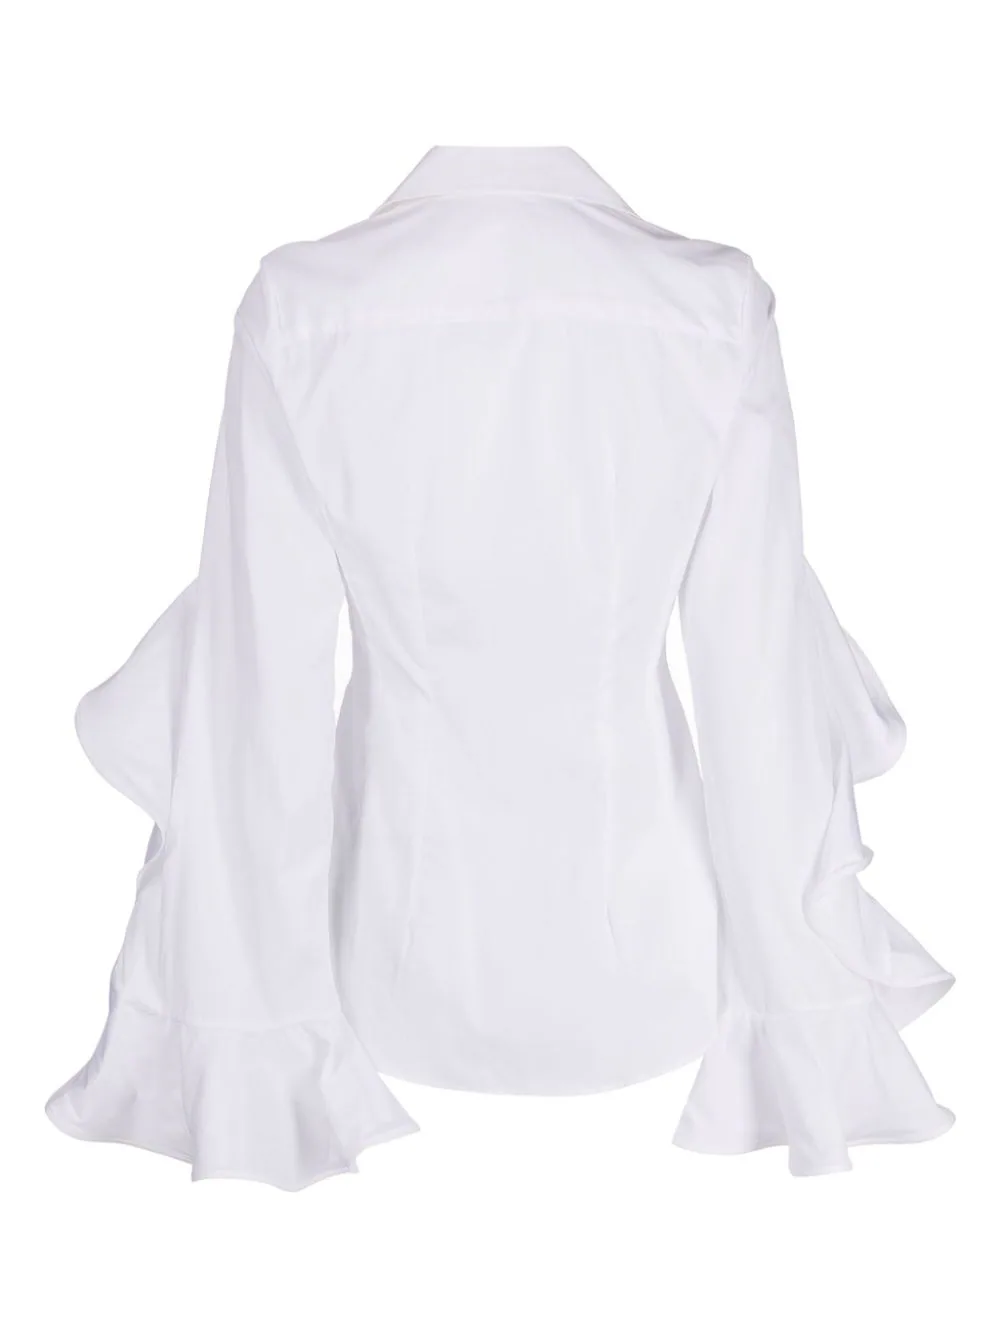 palmer-harding-Prosper-Shirt-White-2